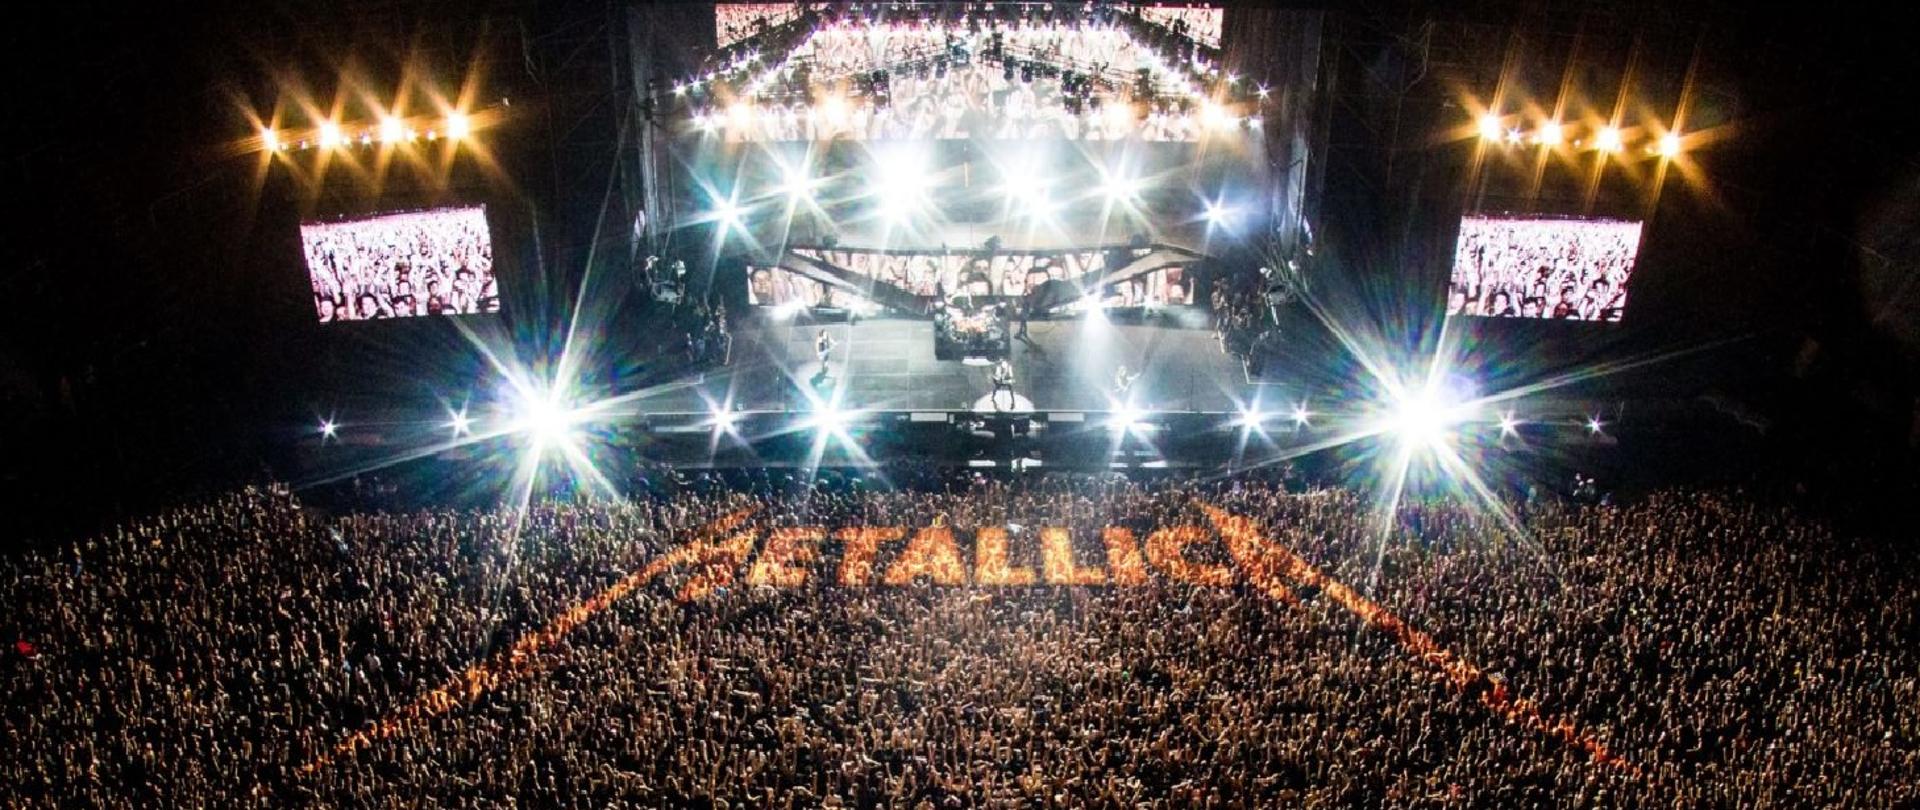 zdjęcie przedstawia imprezę masową - koncert